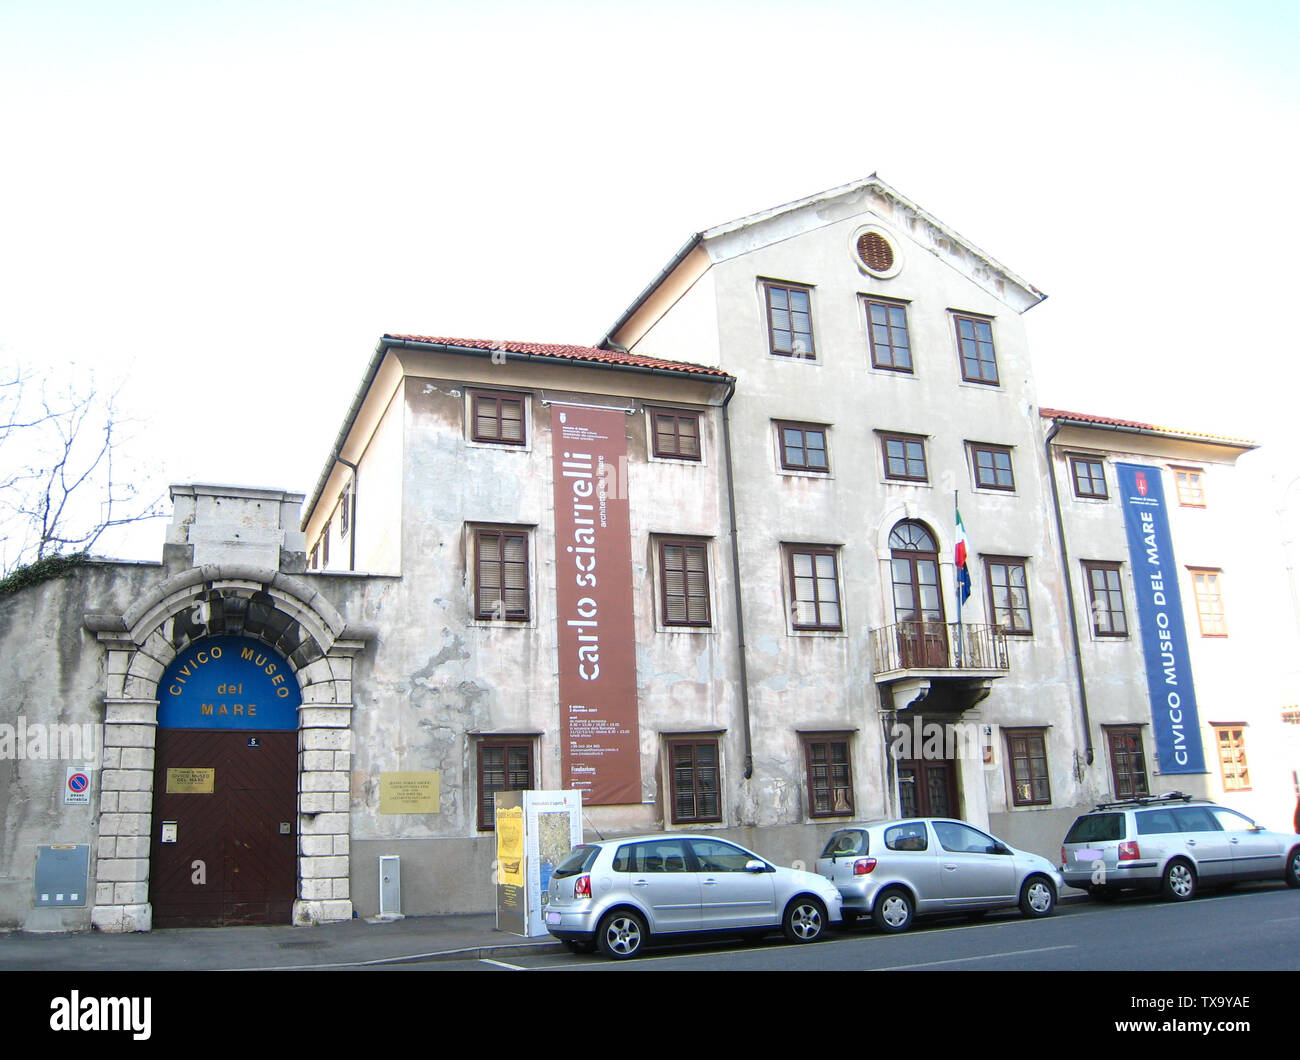 La sede del Museo del Mare (Trieste). Febbraio 2008; 18 février 2008 (date de téléchargement originale); Transféré de IT.pedia; Uploader Original était Tiesse à IT.pedia; Banque D'Images